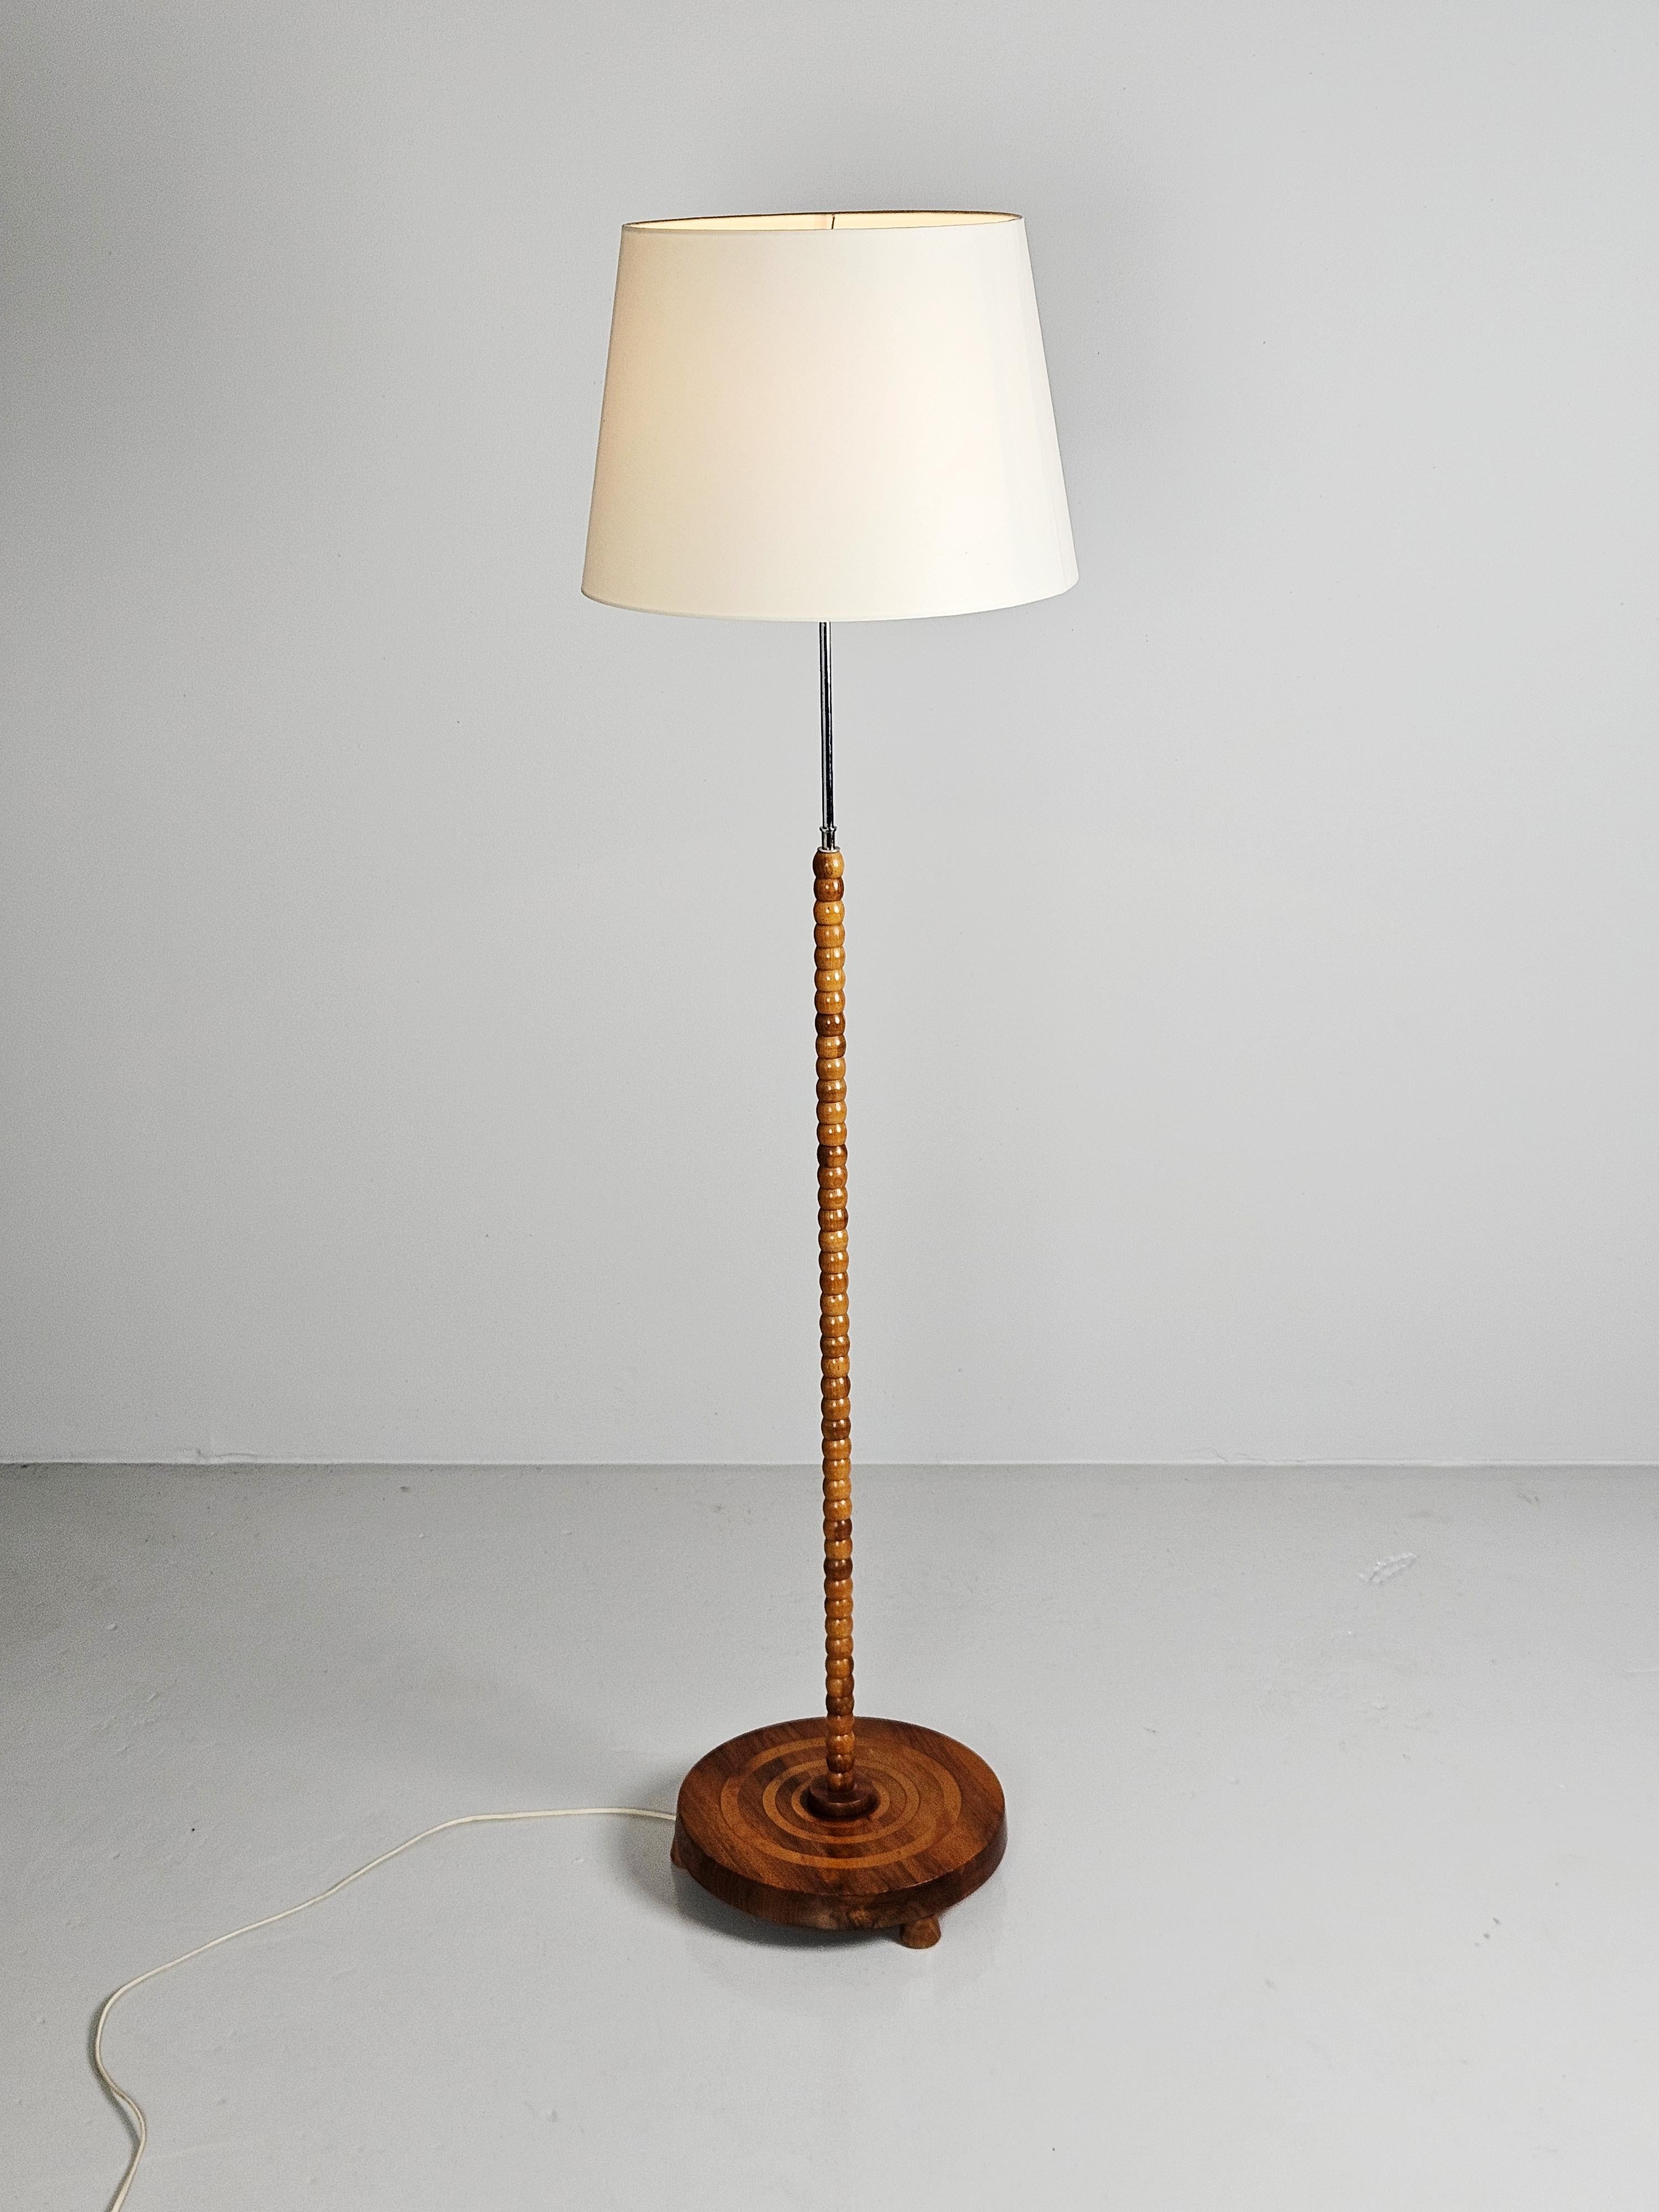 Schöne schwedische moderne Stehlampe aus der Mitte des 20. Jahrhunderts. 

Modernes Design mit Details aus Stahl und edlem Holz.